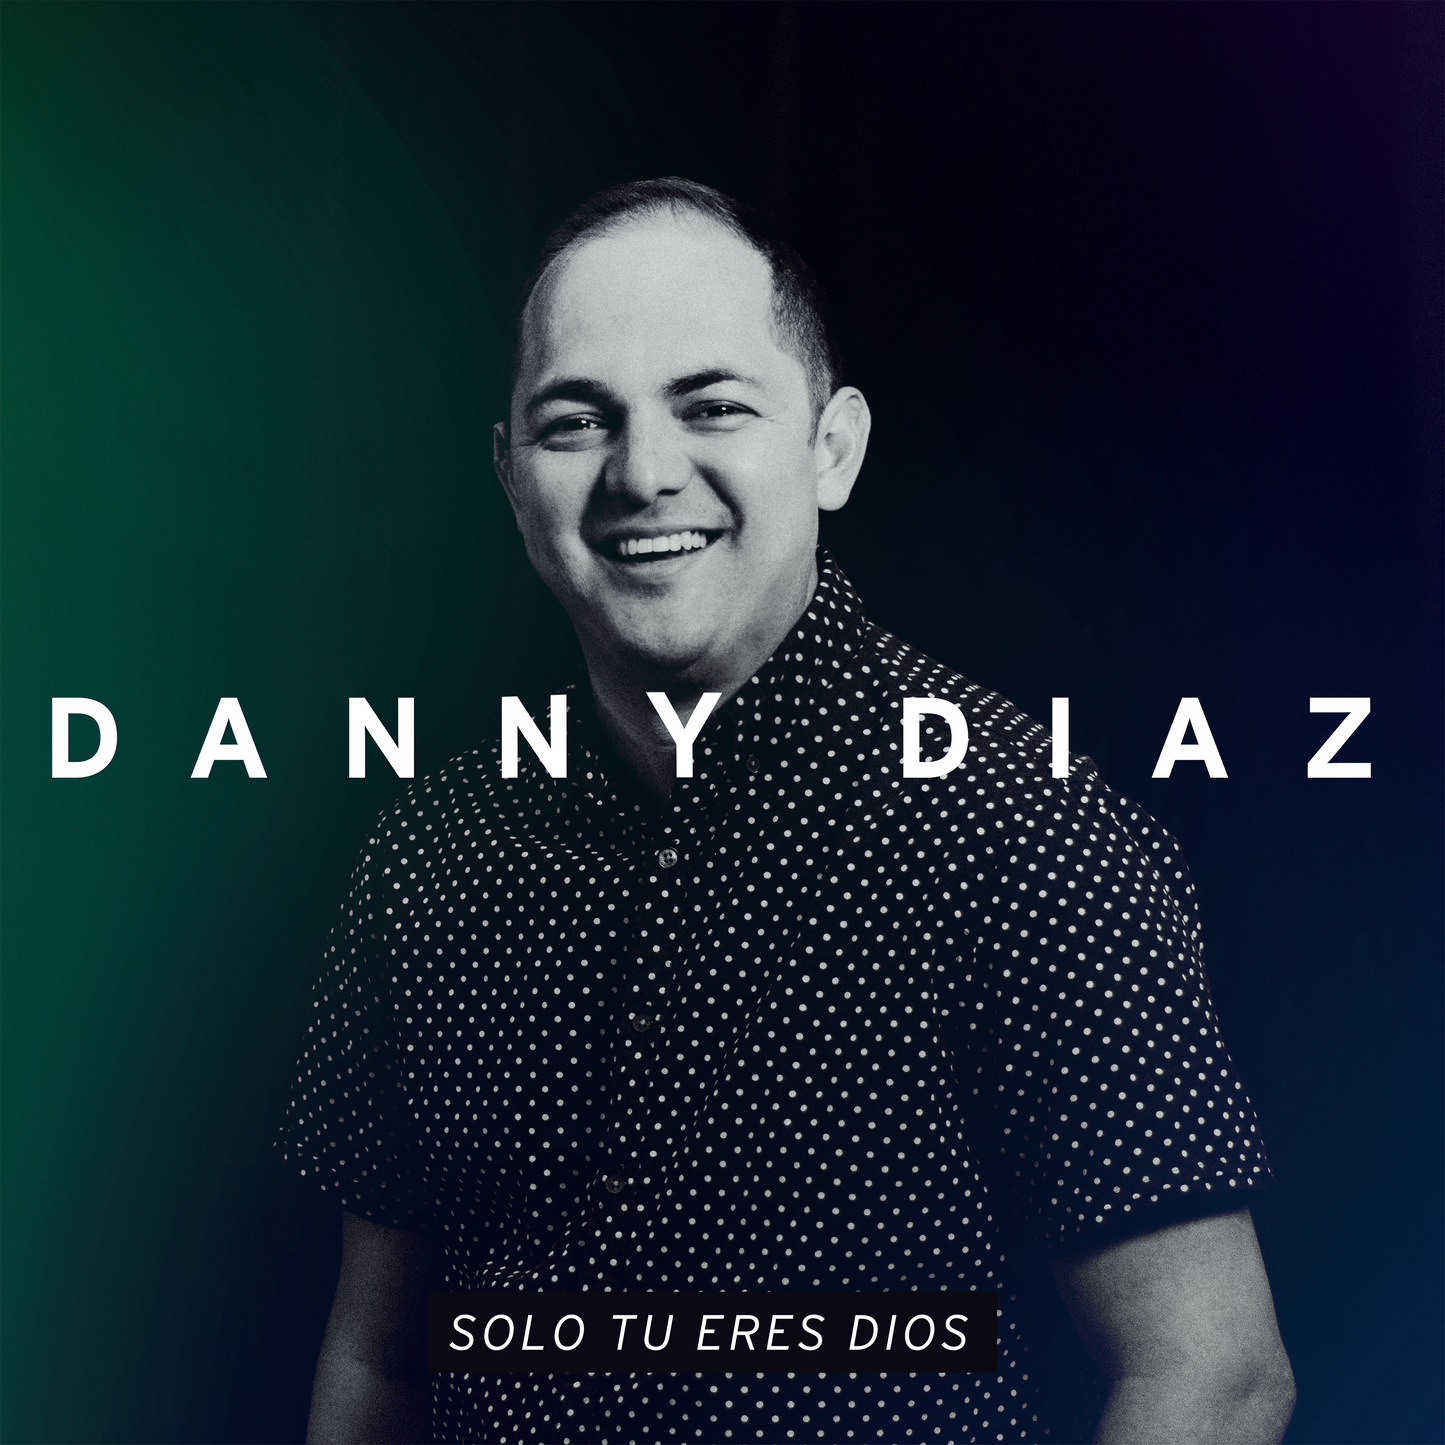 Como En El Cielo (Mike Reyes) - Danny Diaz- Multitrack